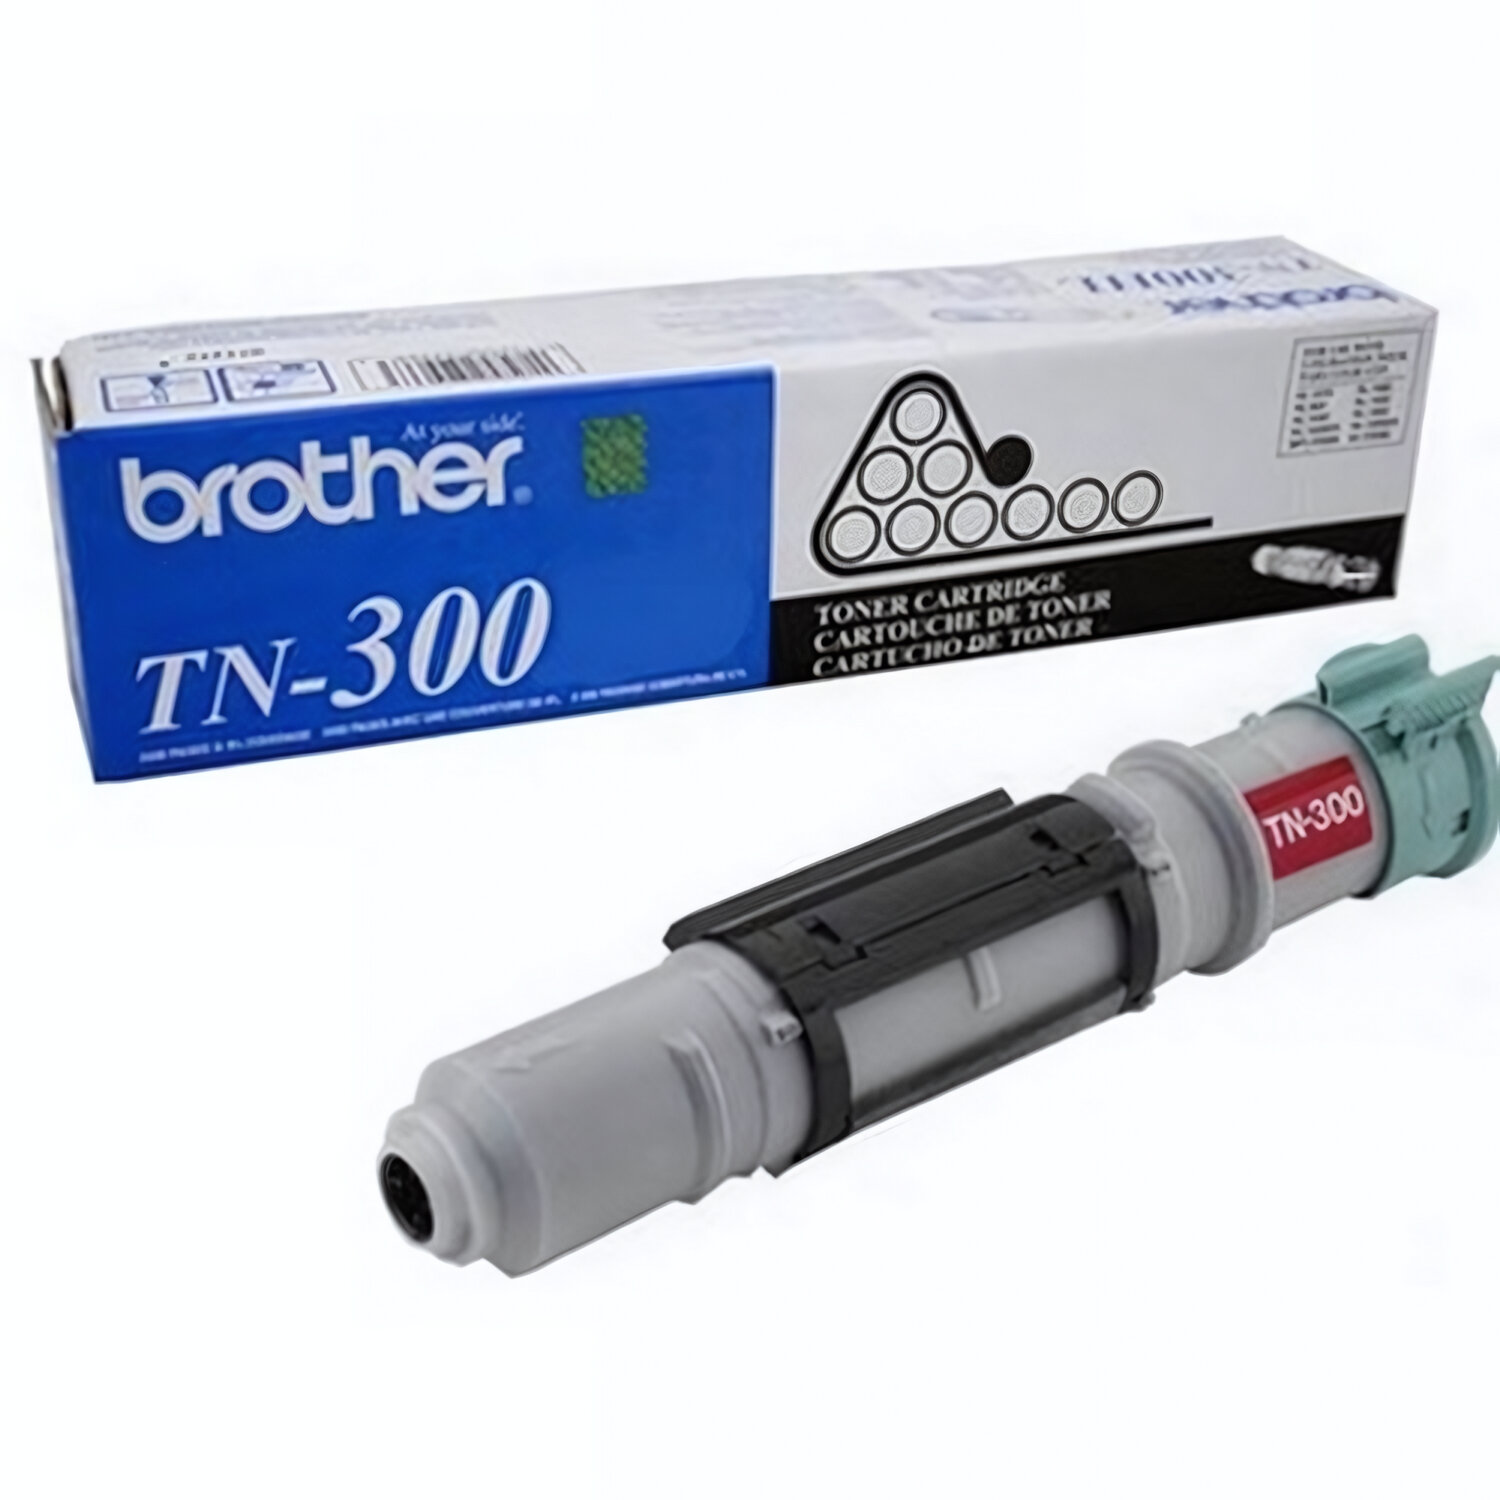 TN300/TN-300 Картридж Brother для HL 1040/1050/1070 — Высокий ресурс 2200 стр.